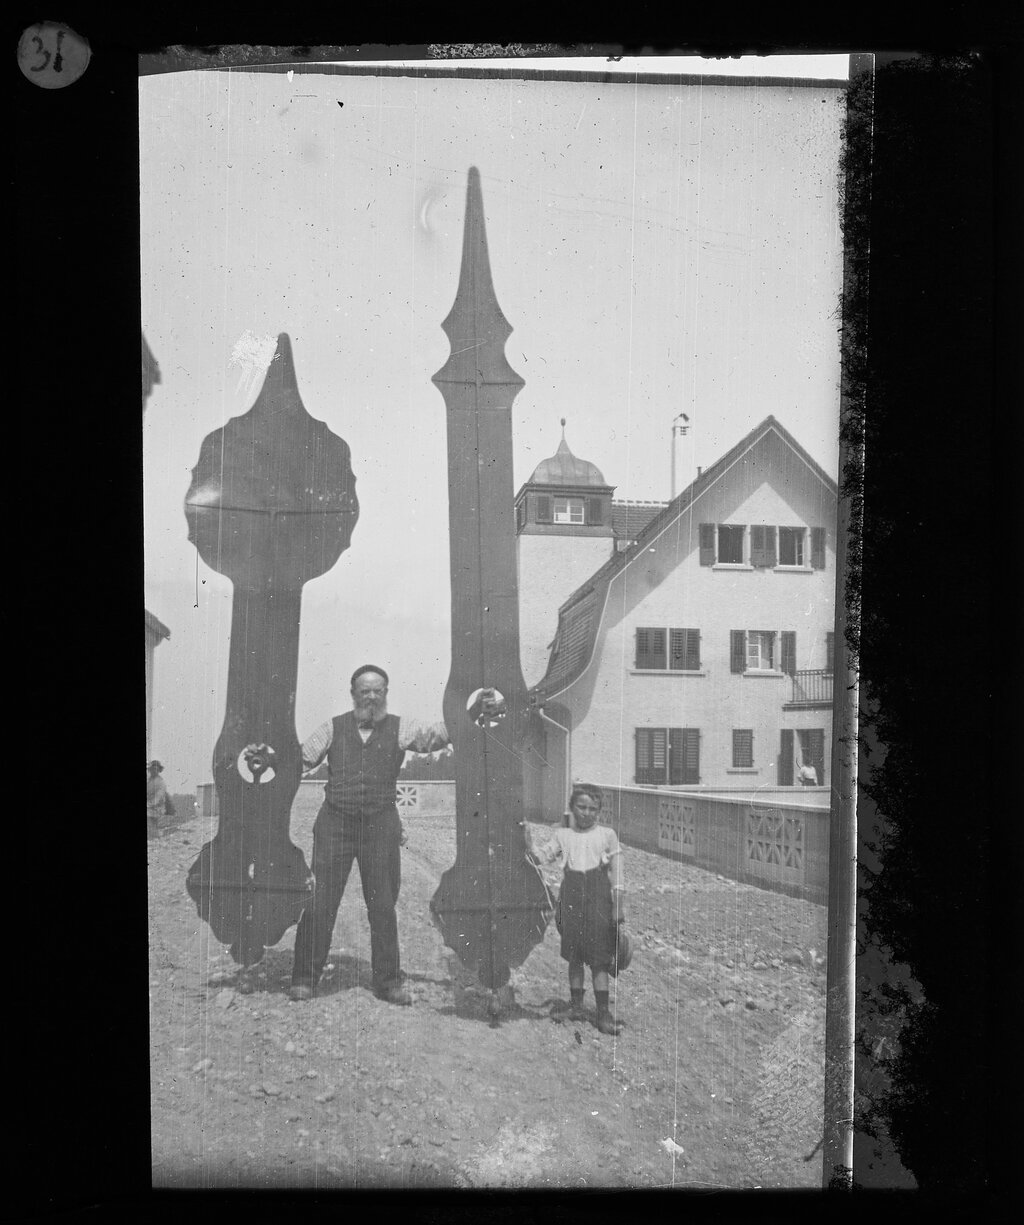 Archivio di Stato di S. Gallo - Foto della collezione di vetrate sulla costruzione della Chiesa protestante di Heiligkreuz a San Gallo del 1912 